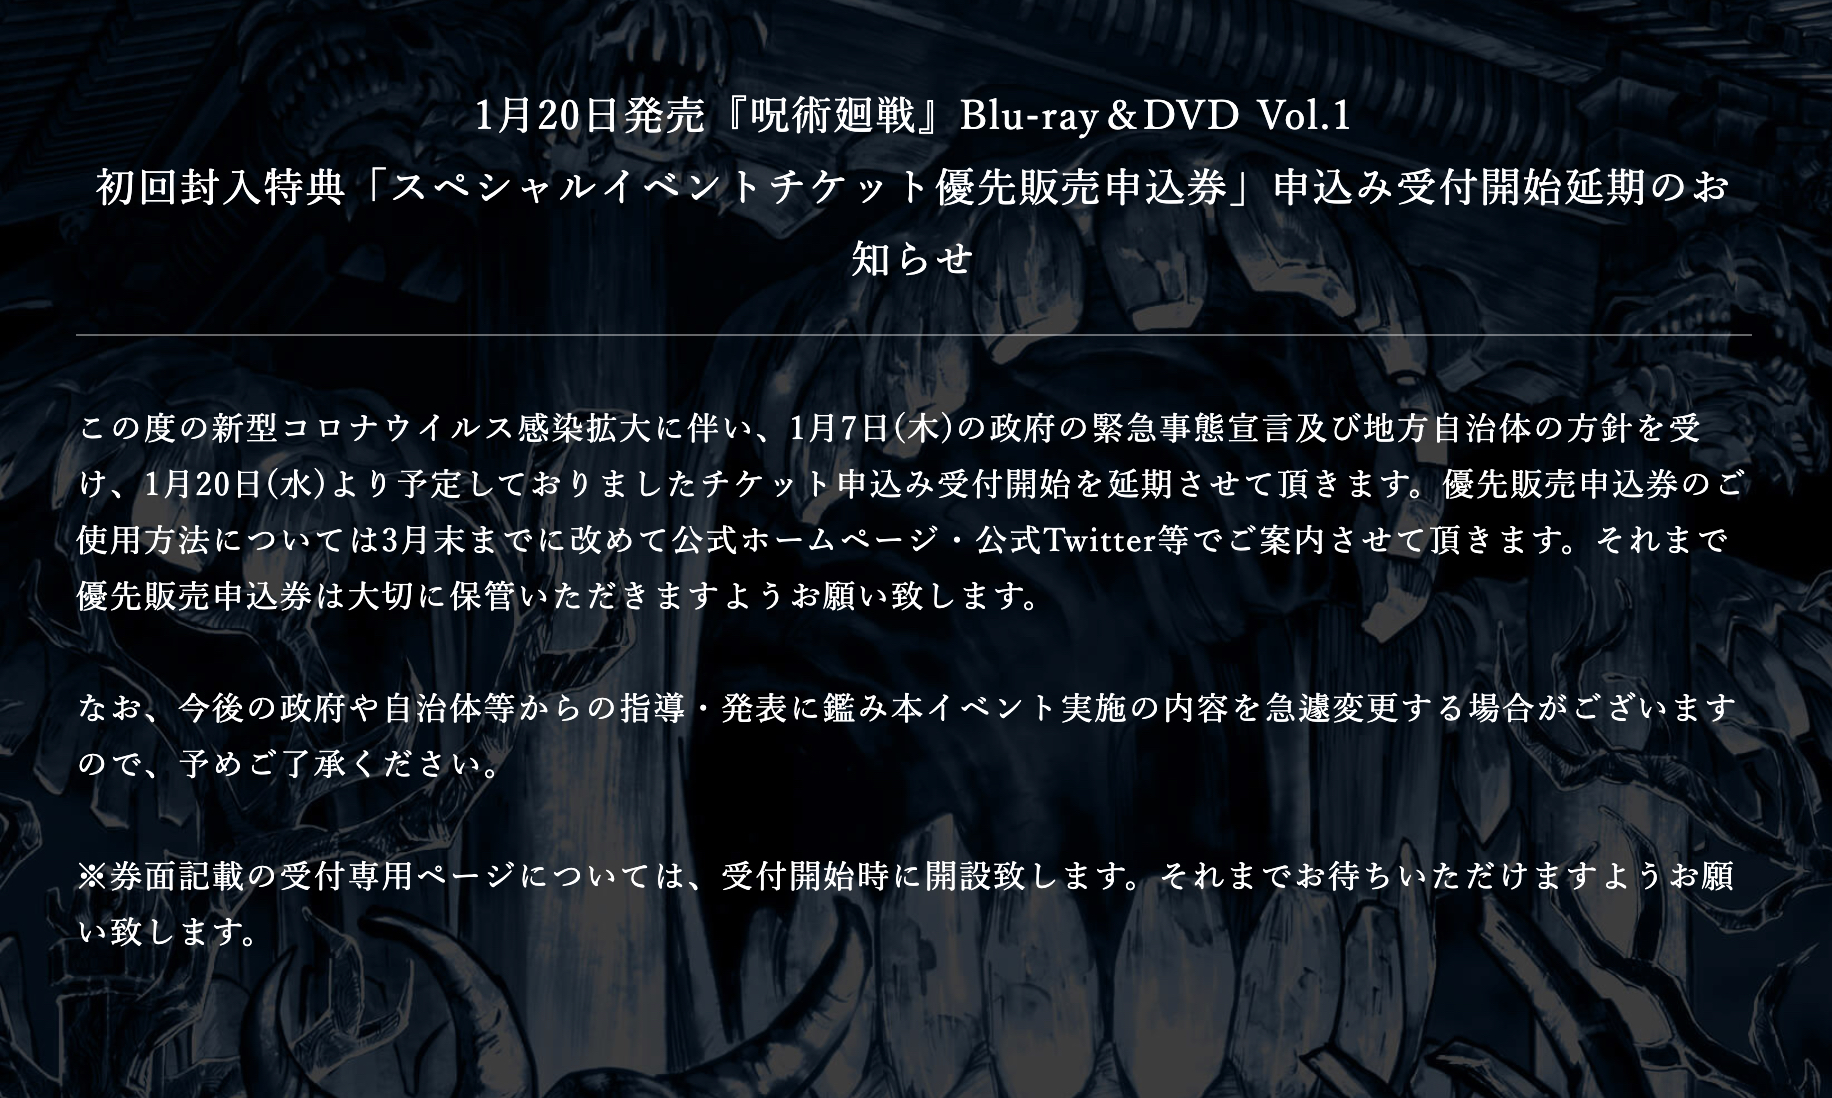 1月20日発売『呪術廻戦』Blu-ray＆DVD Vol.1 初回封入特典「スペシャルイベントチケット優先販売申込券」申込み受付開始延期のお知らせ(公式サイトより)